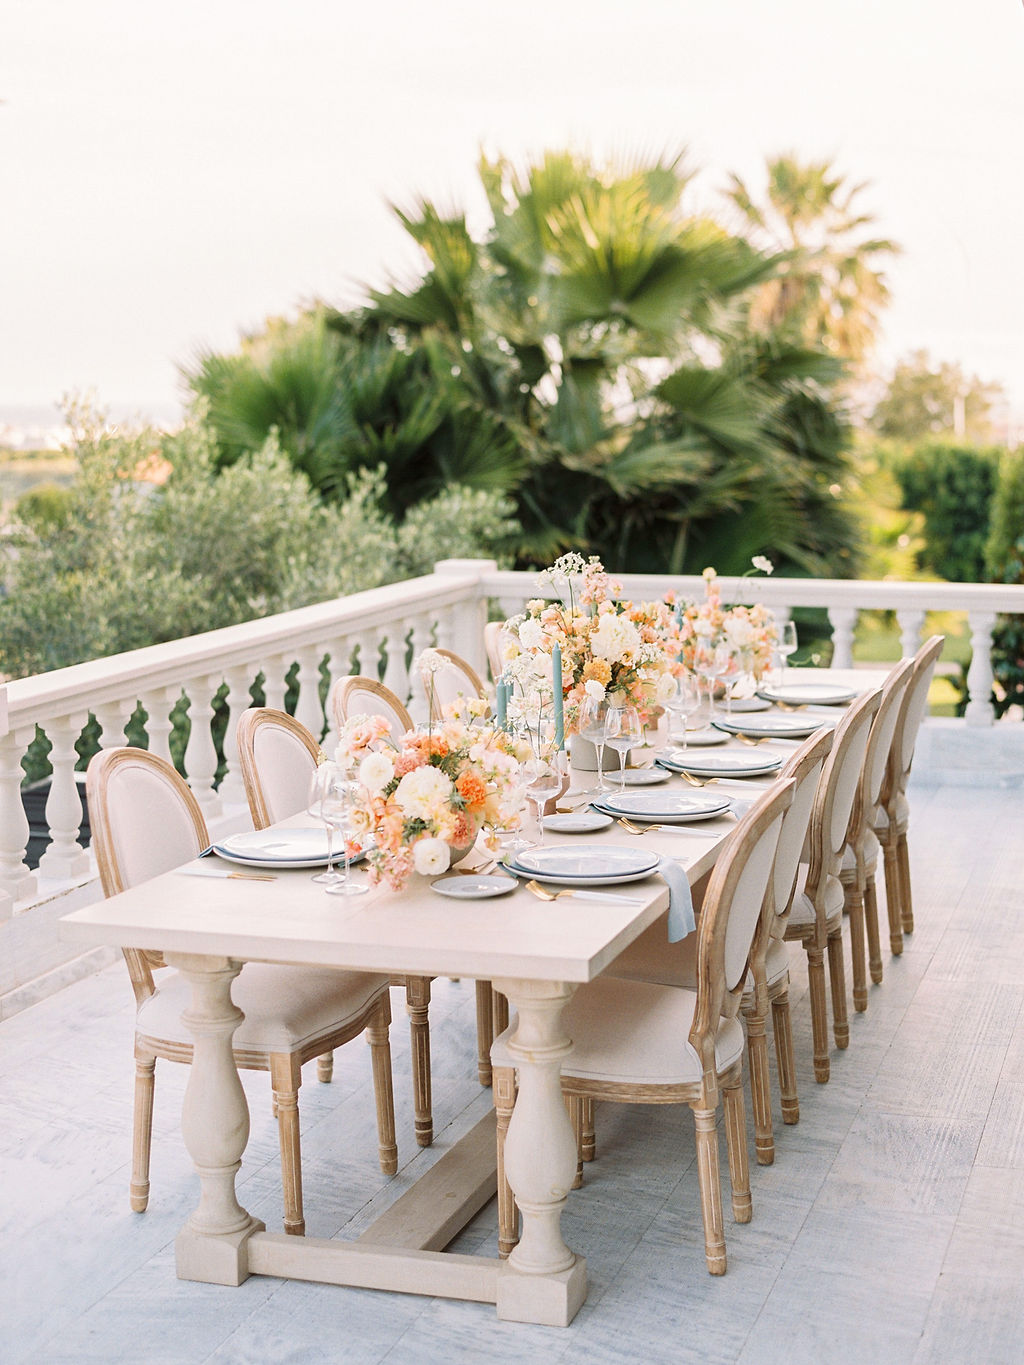 Wedding In Greece - Table Setting